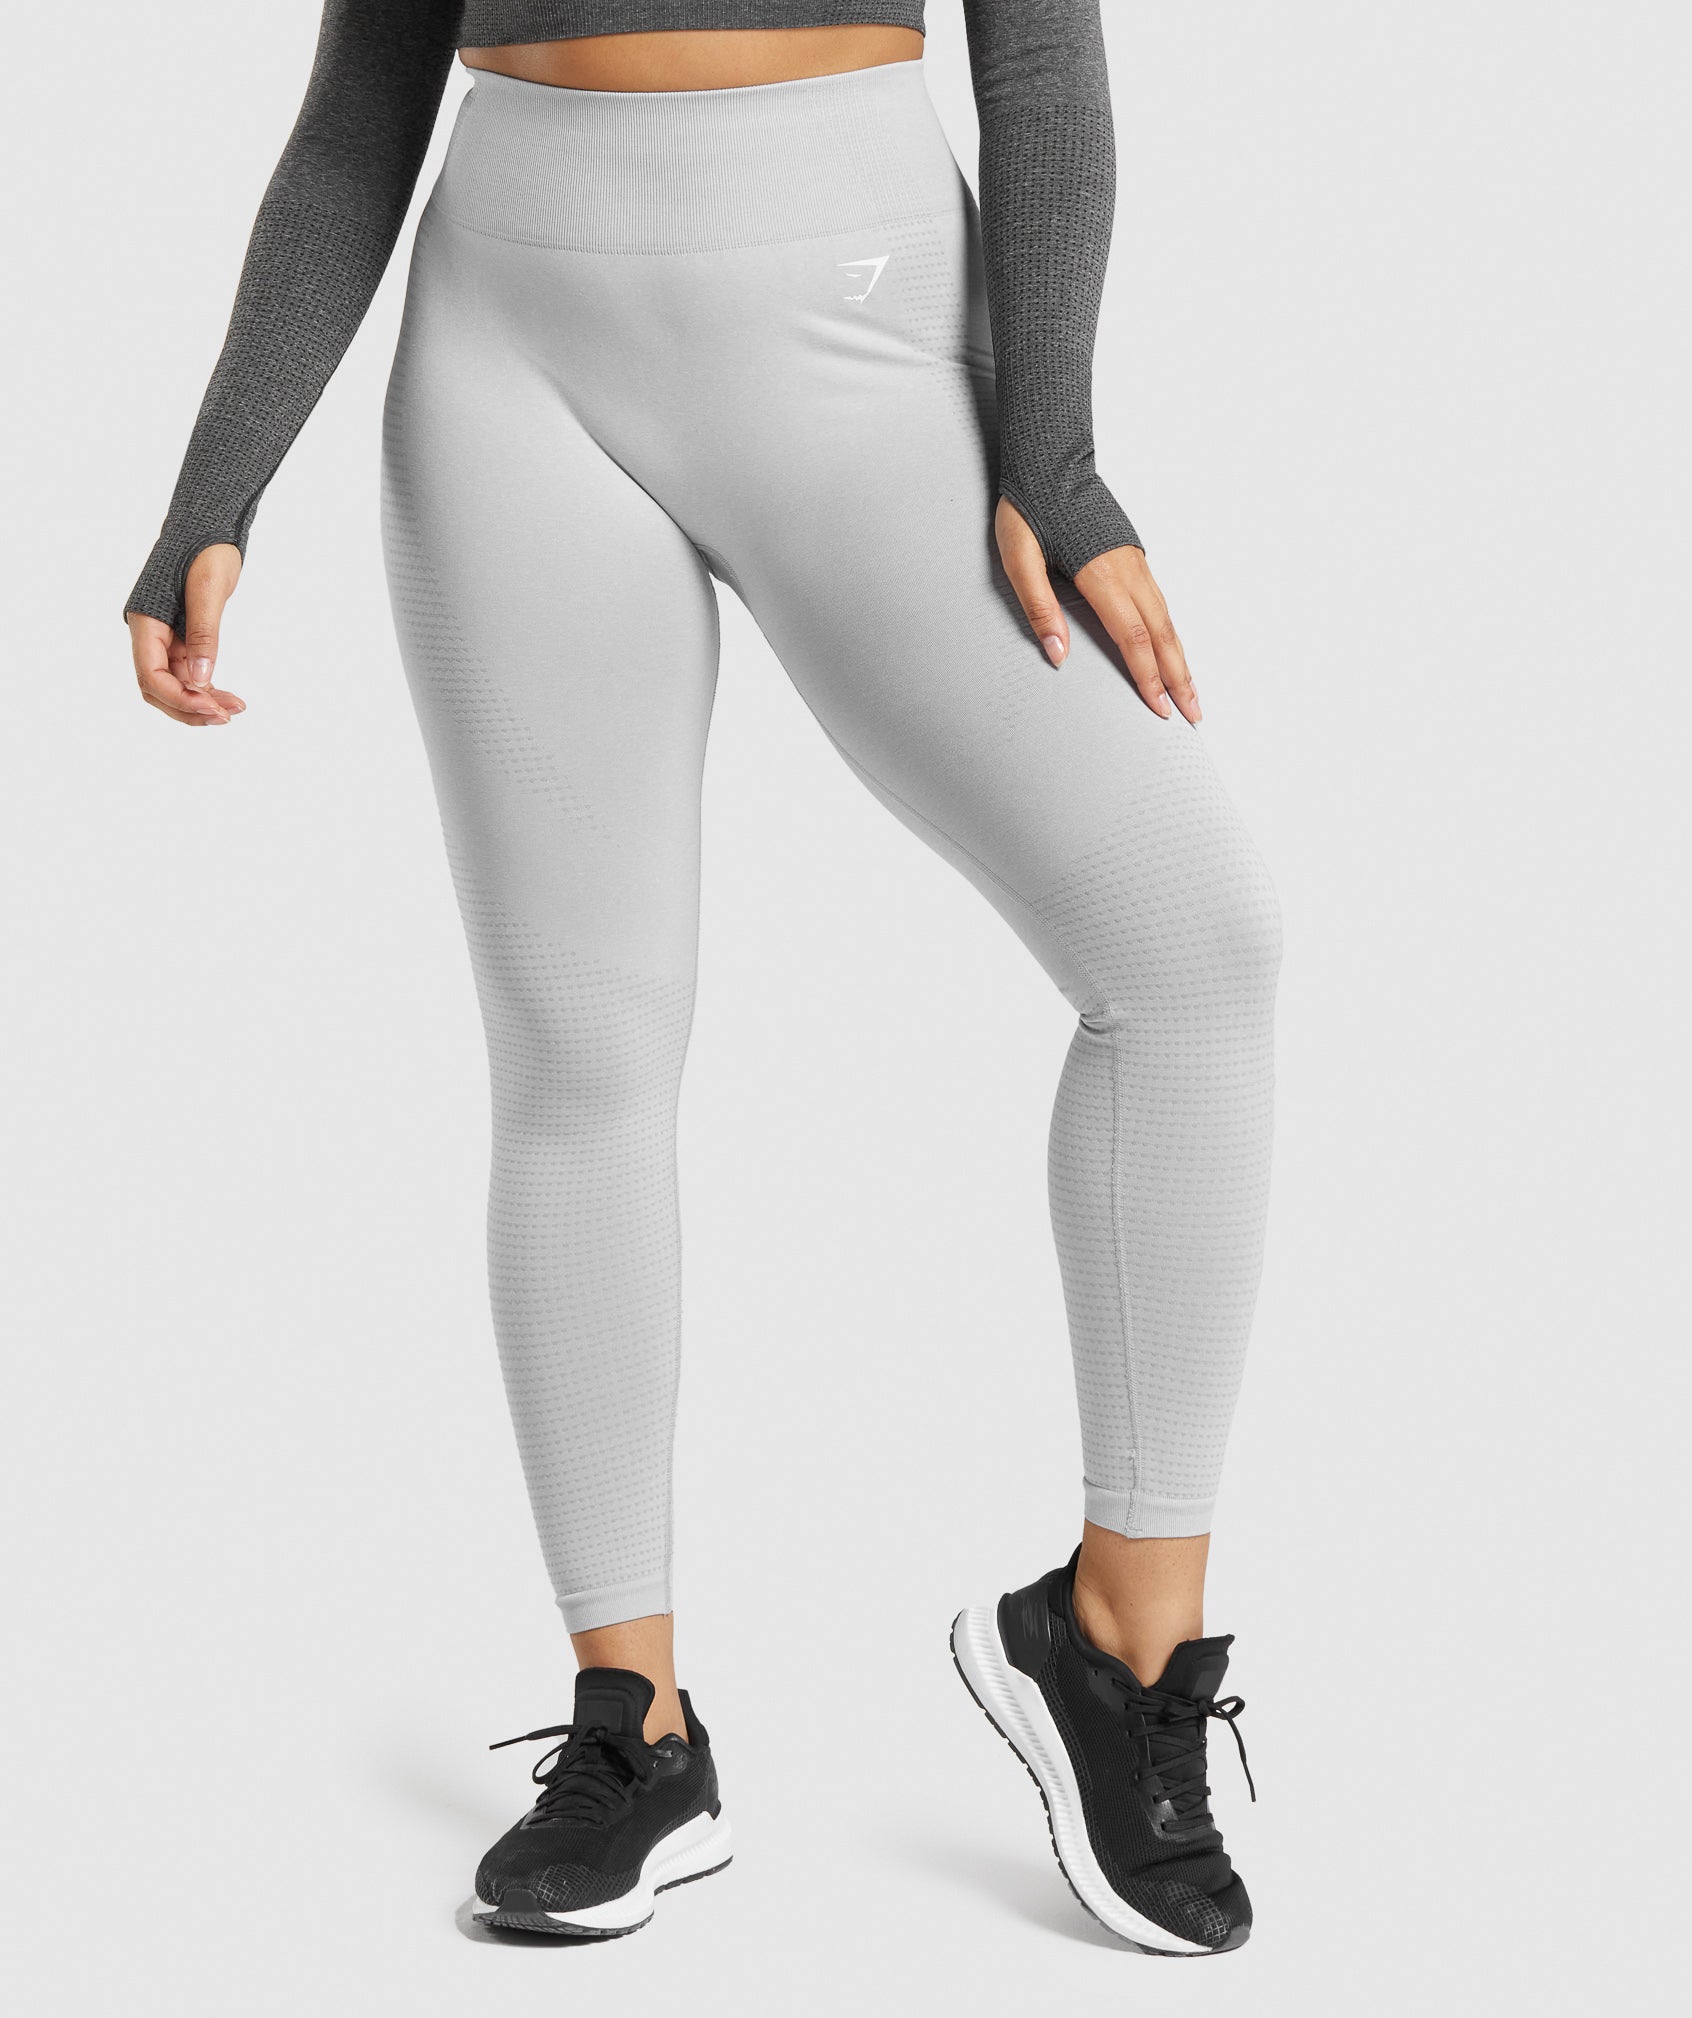 Gym Shark - GYMSHARK VITAL SEAMLESS 2.0 LEGGINGS on Designer Wardrobe